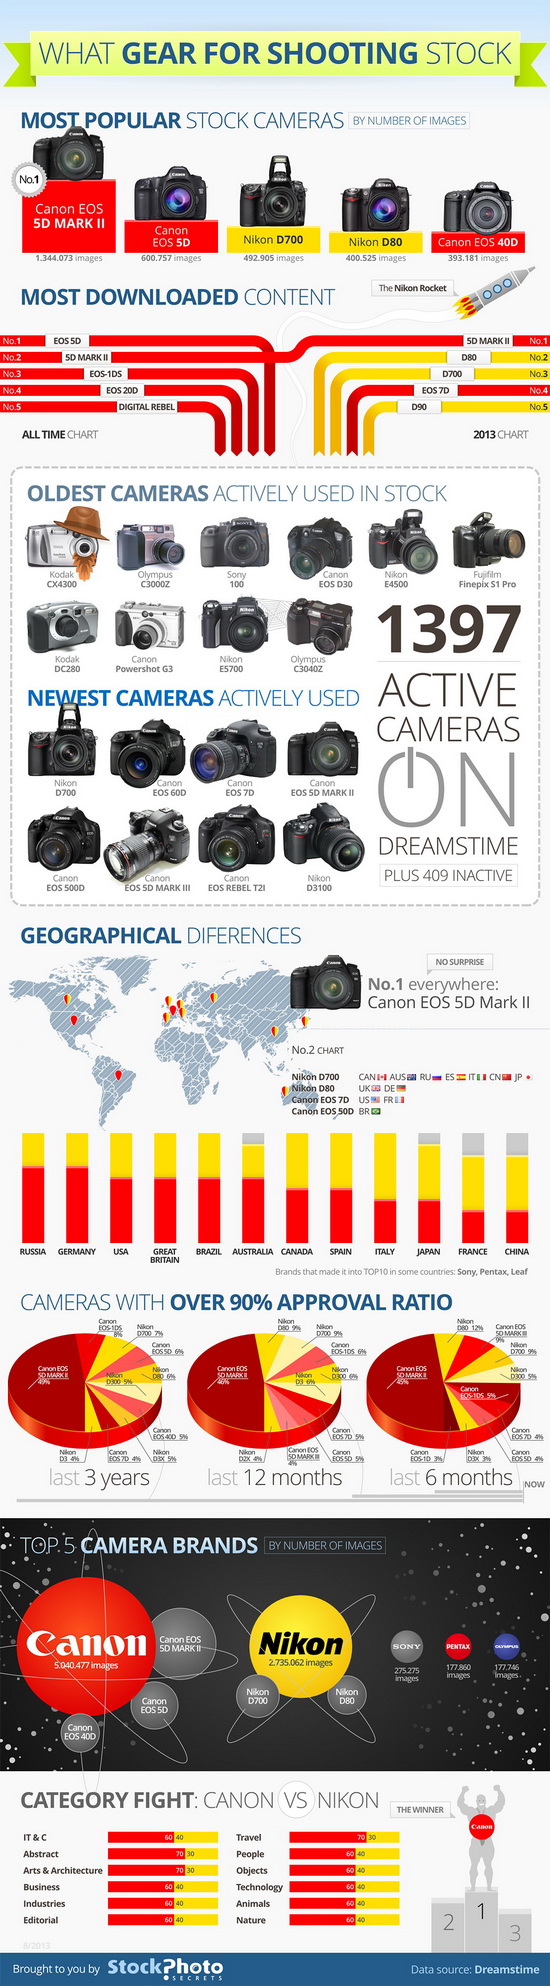 jenama kamera yang paling popular Infographic mendedahkan kamera paling popular di laman web saham Berita dan Ulasan